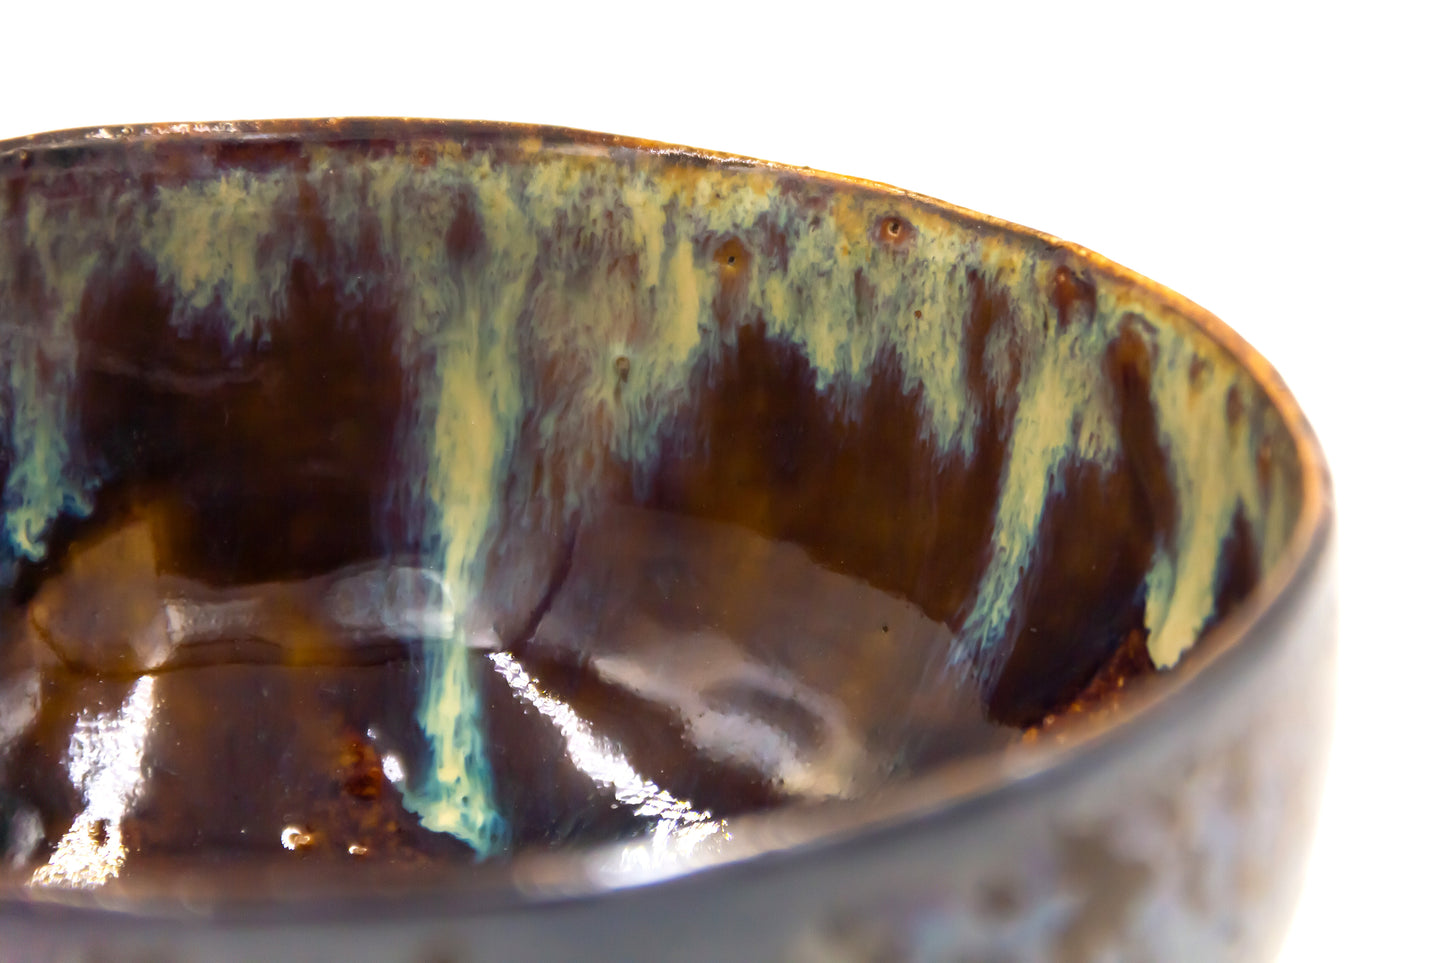 Miska ceramiczna w kolorze brązowo-metalowym